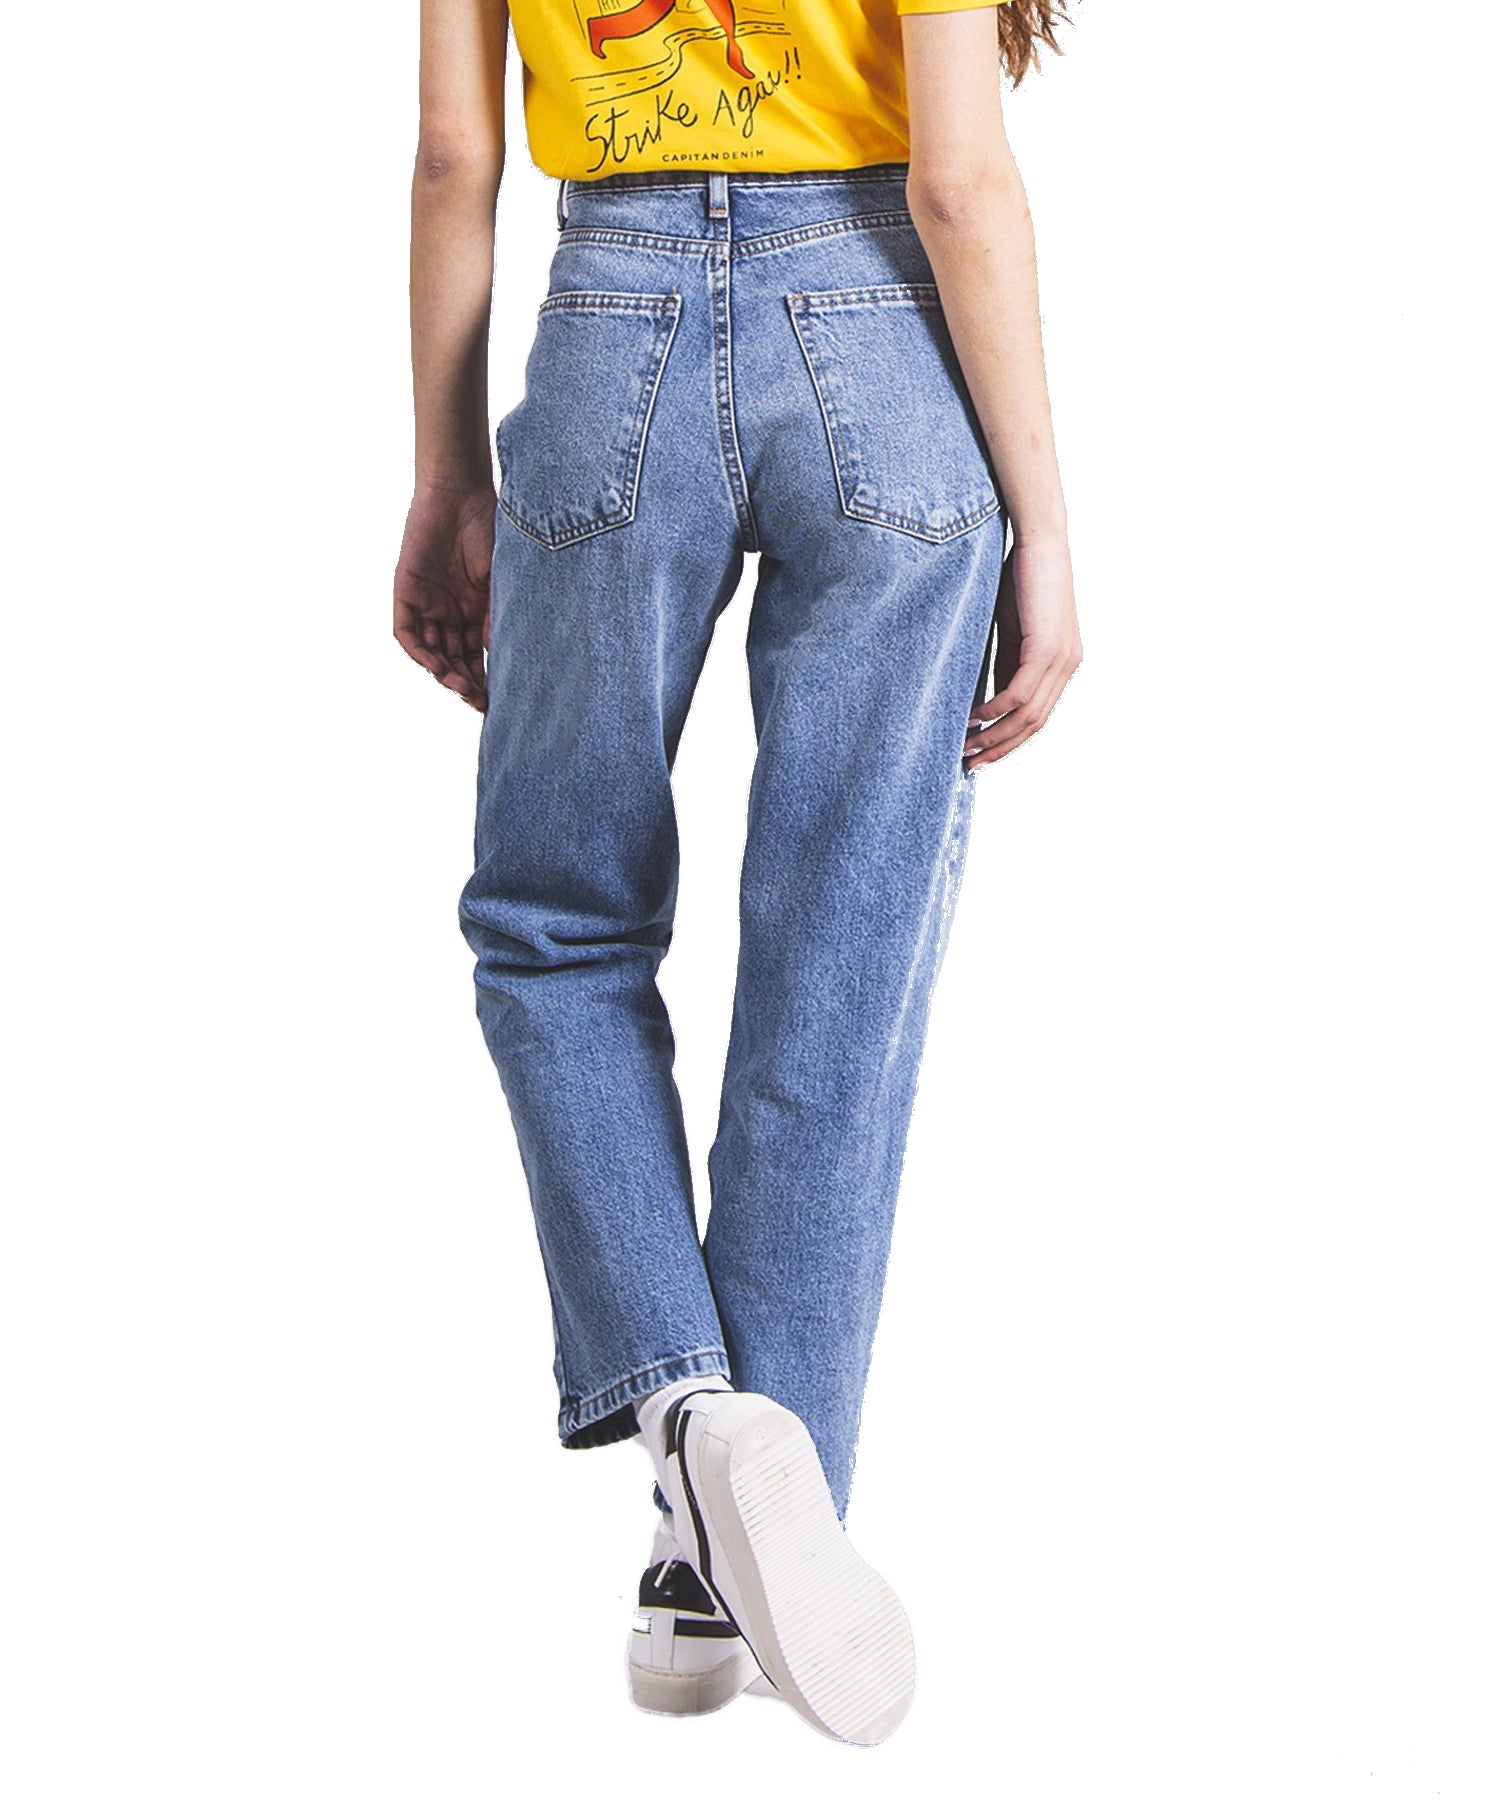 Pantalones Capitan Denim-Tuls vintage mid blue color denim-marca nacional-cintura alta, corte recto-animal-free-100%algodón